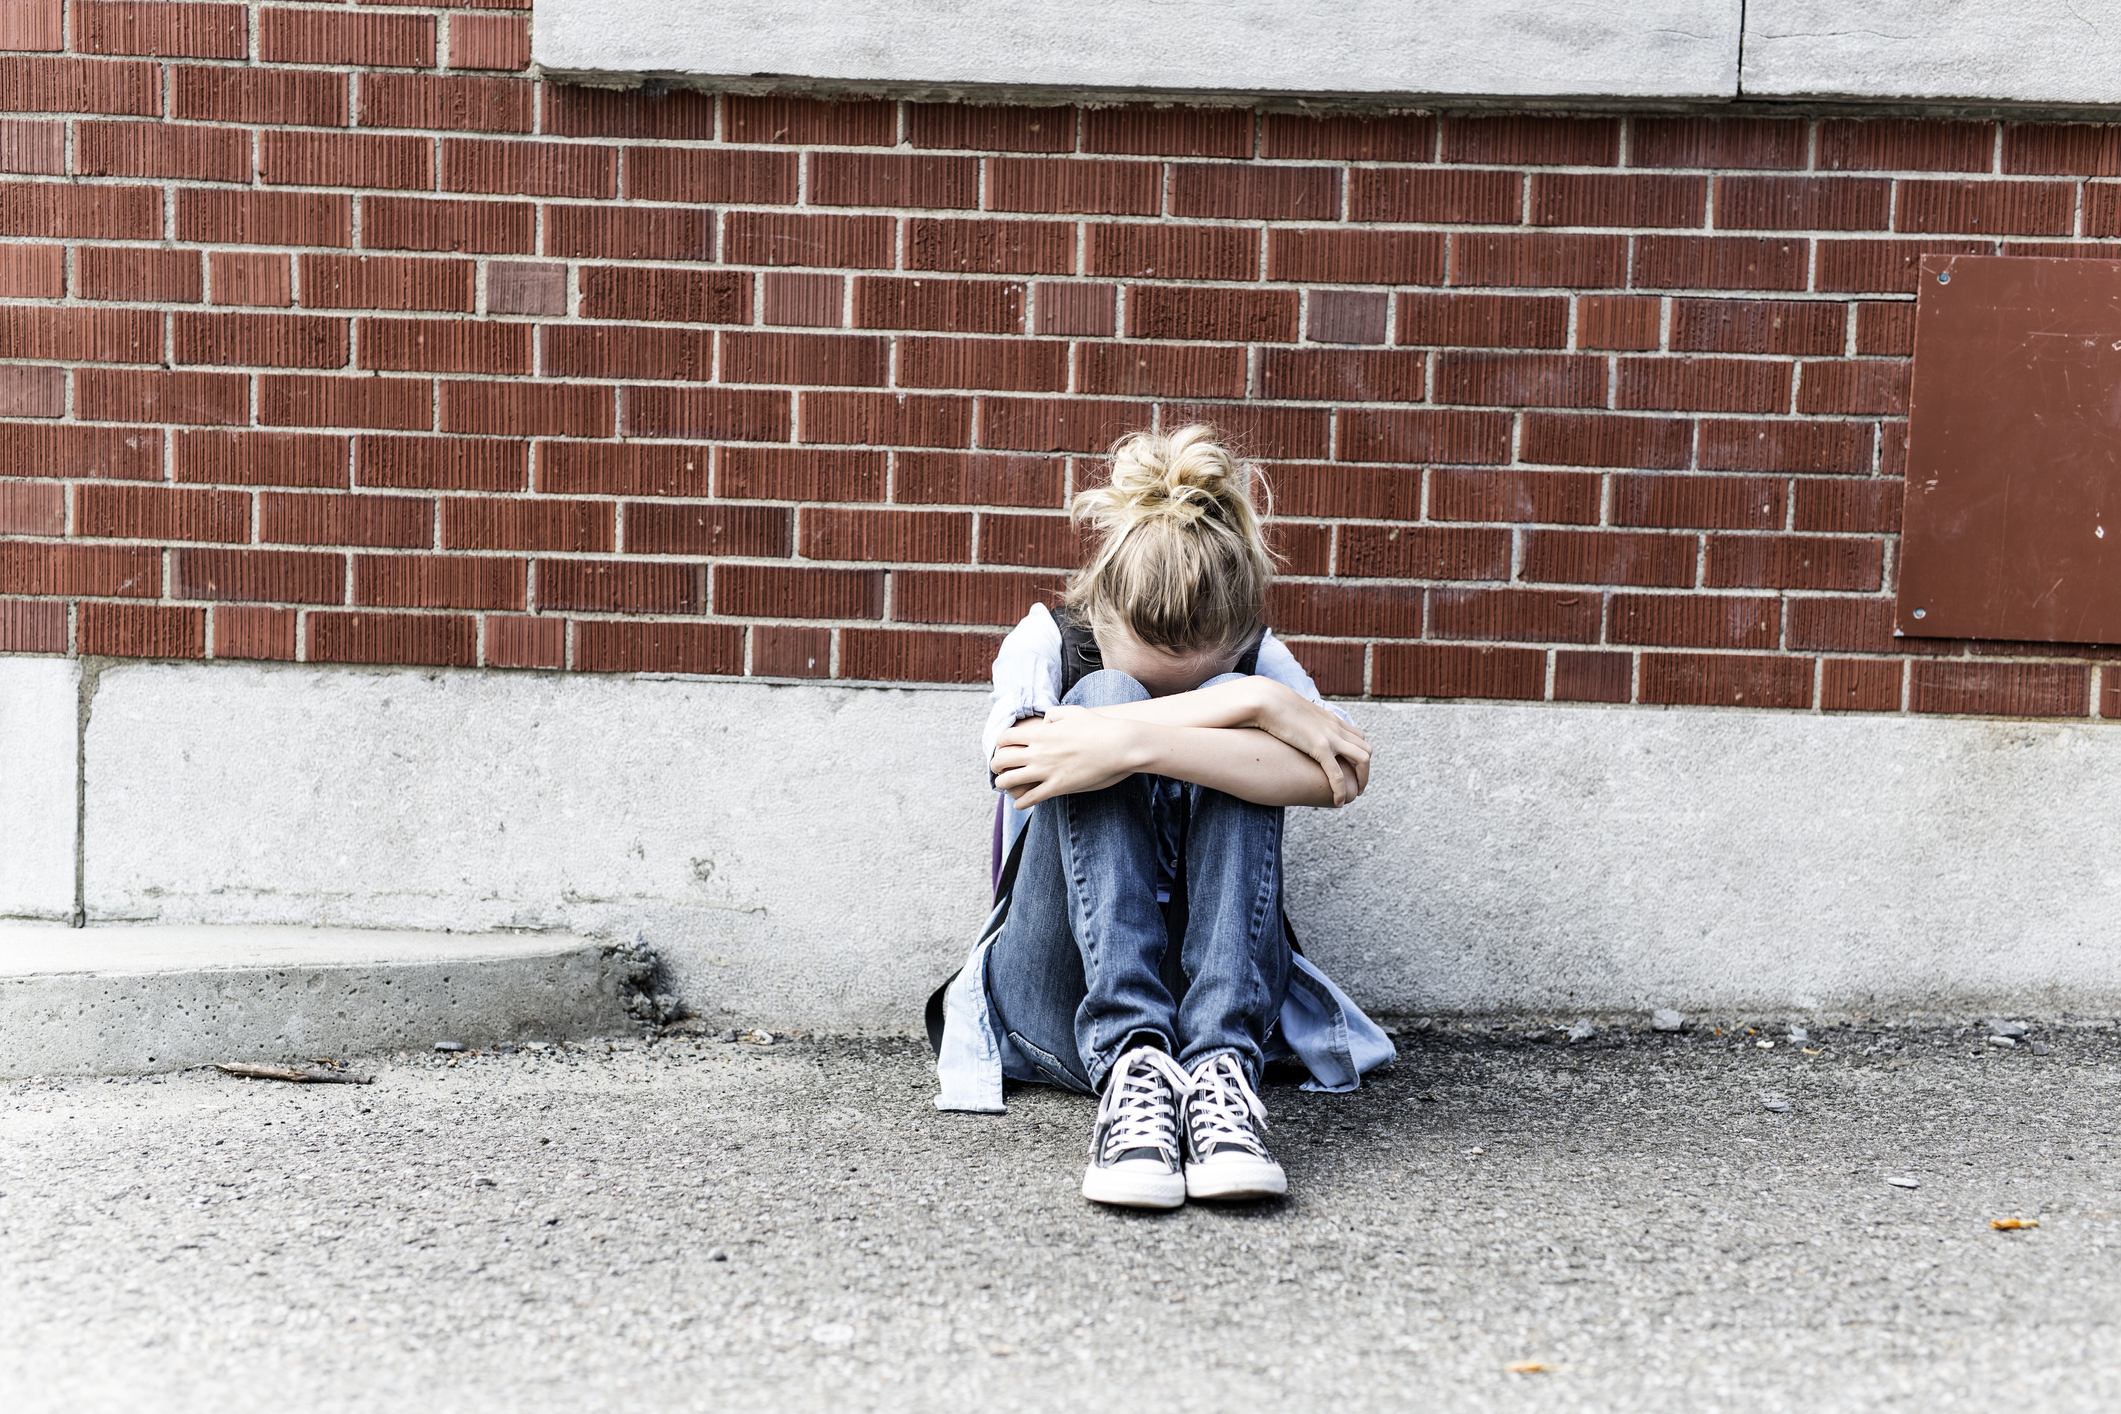 Ηράκλειο: Νέα υπόθεση bullying – 7χρονη βρέθηκε δεμένη και φιμωμένη στις τουαλέτες